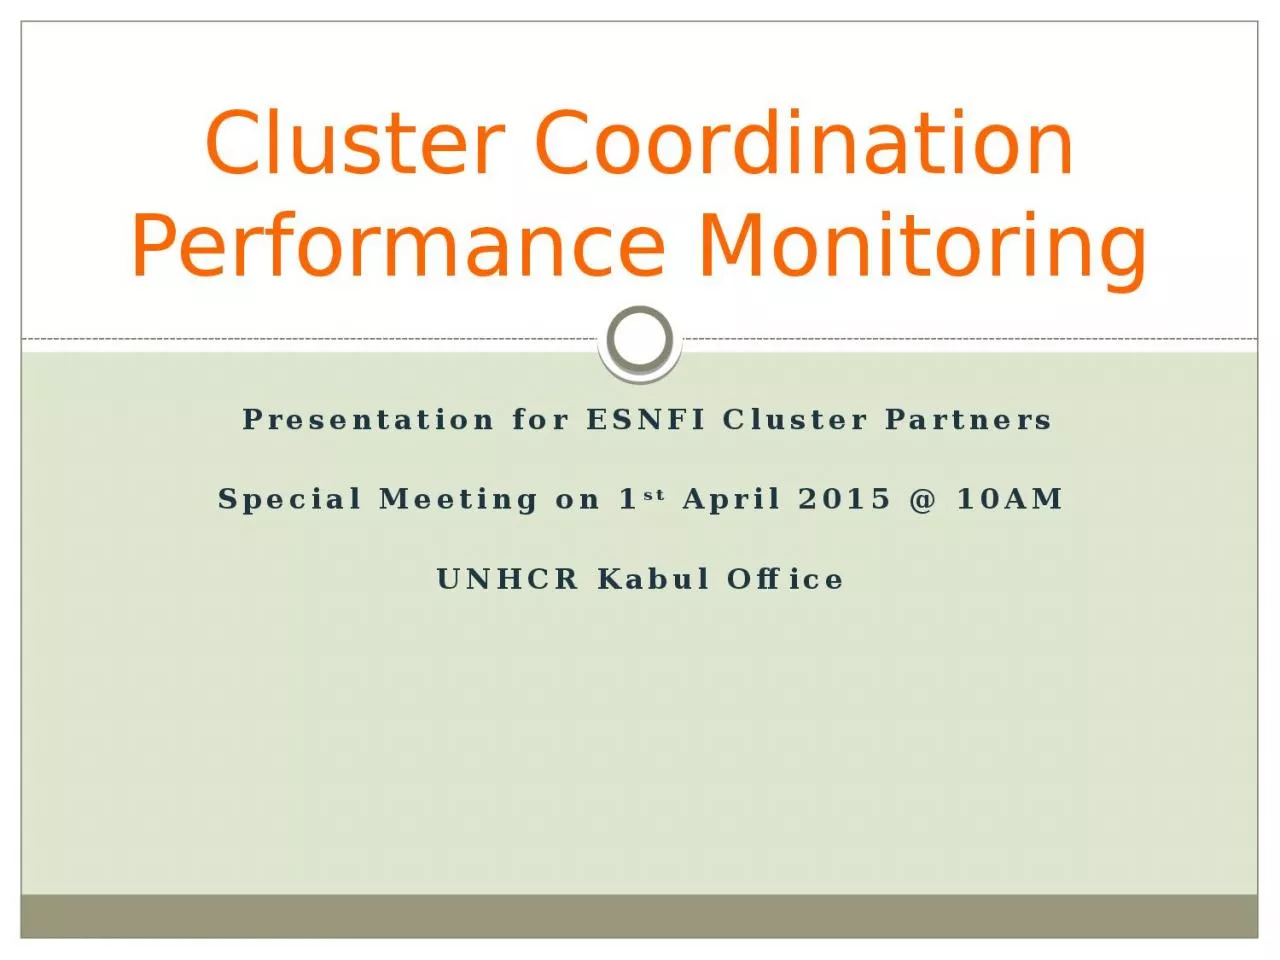 Presentation for ESNFI Cluster Partners